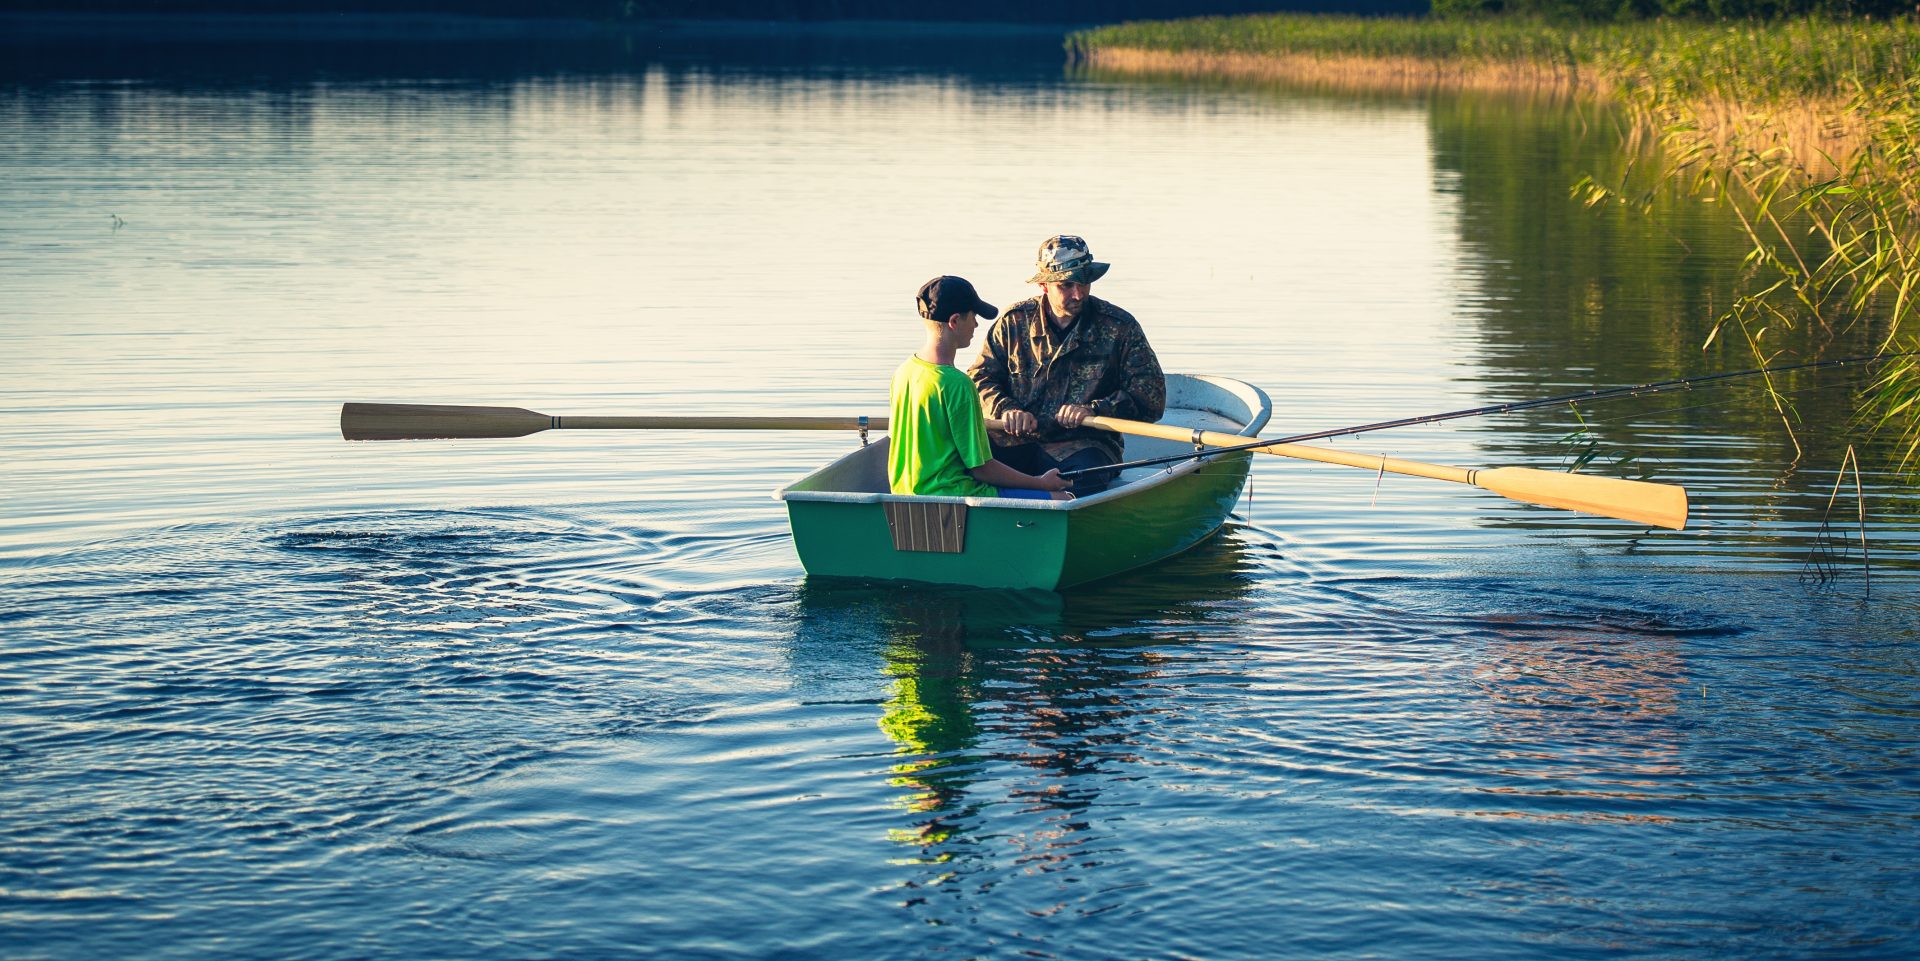 Ein Mann und ein Junge sitzen in einem Ruderboot und paddeln auf einem See.